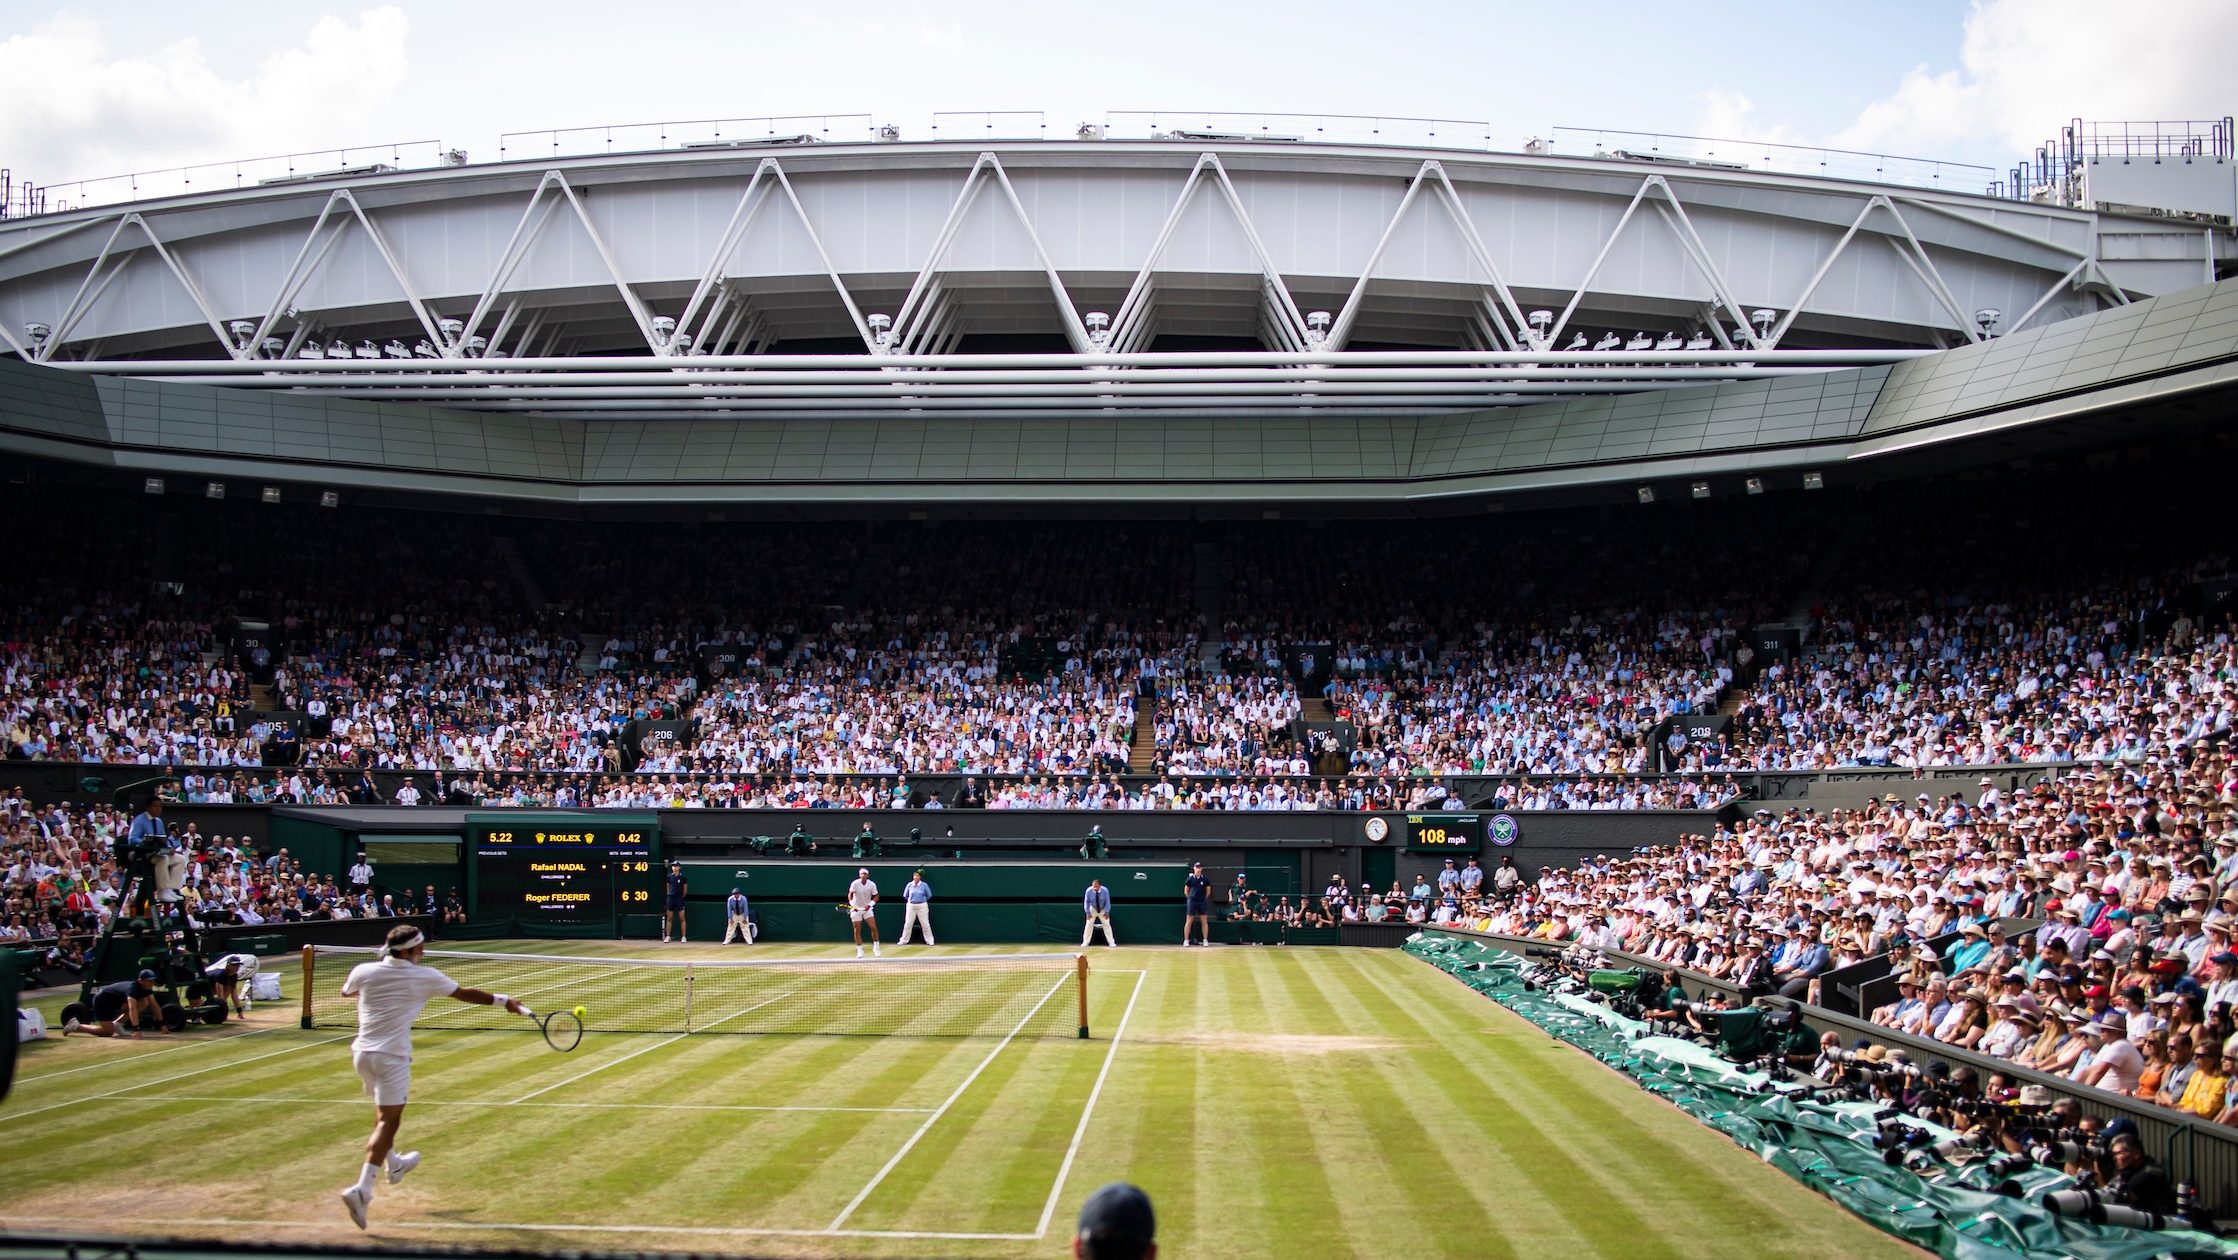 Wimbledon 2021: Top photos from grass-court tennis Grand Slam